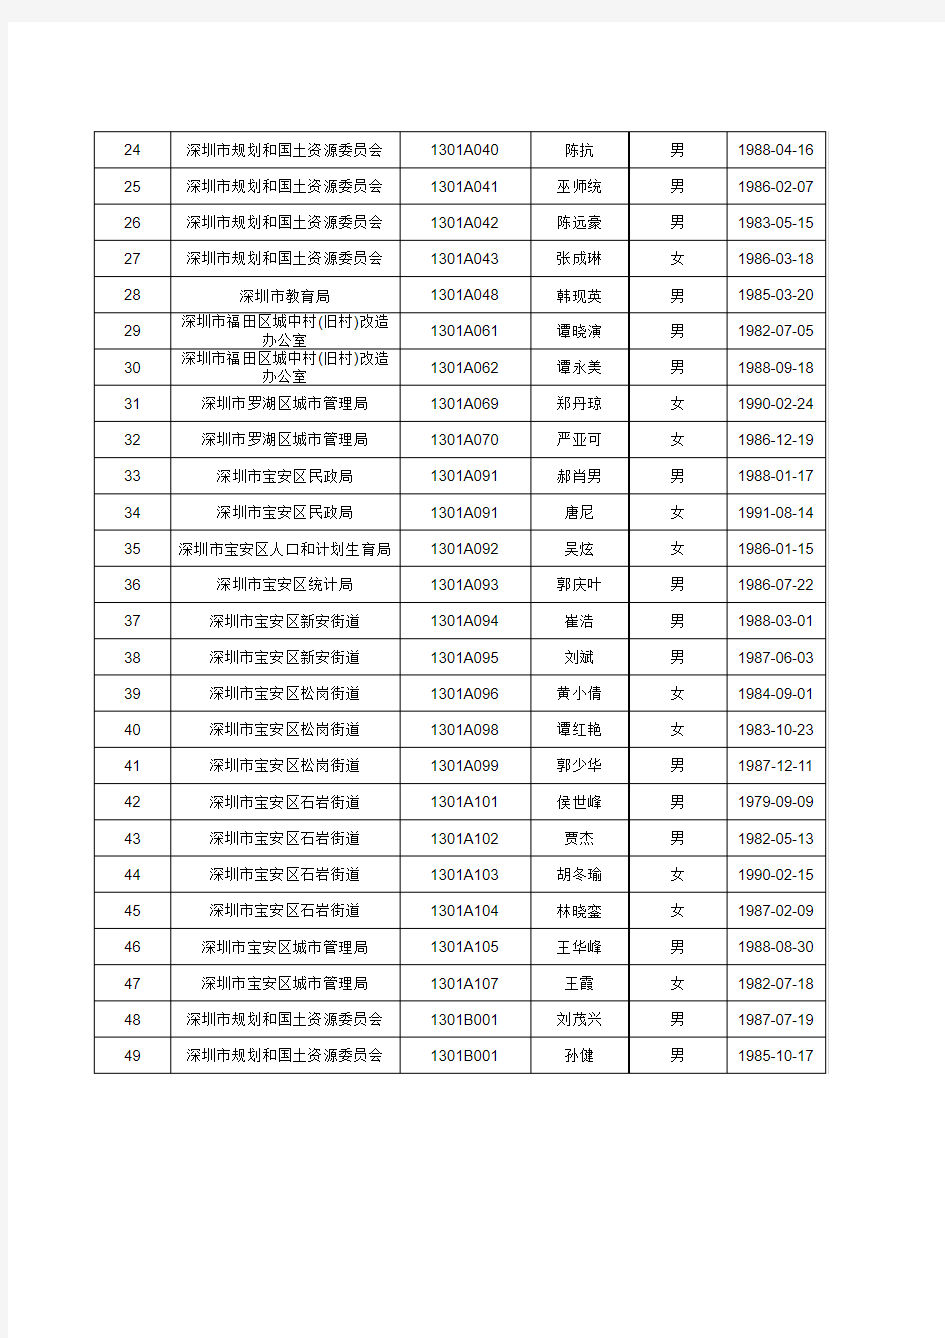 拟聘人员公示名单(四)xls - 深圳市人力资源和社会保障局